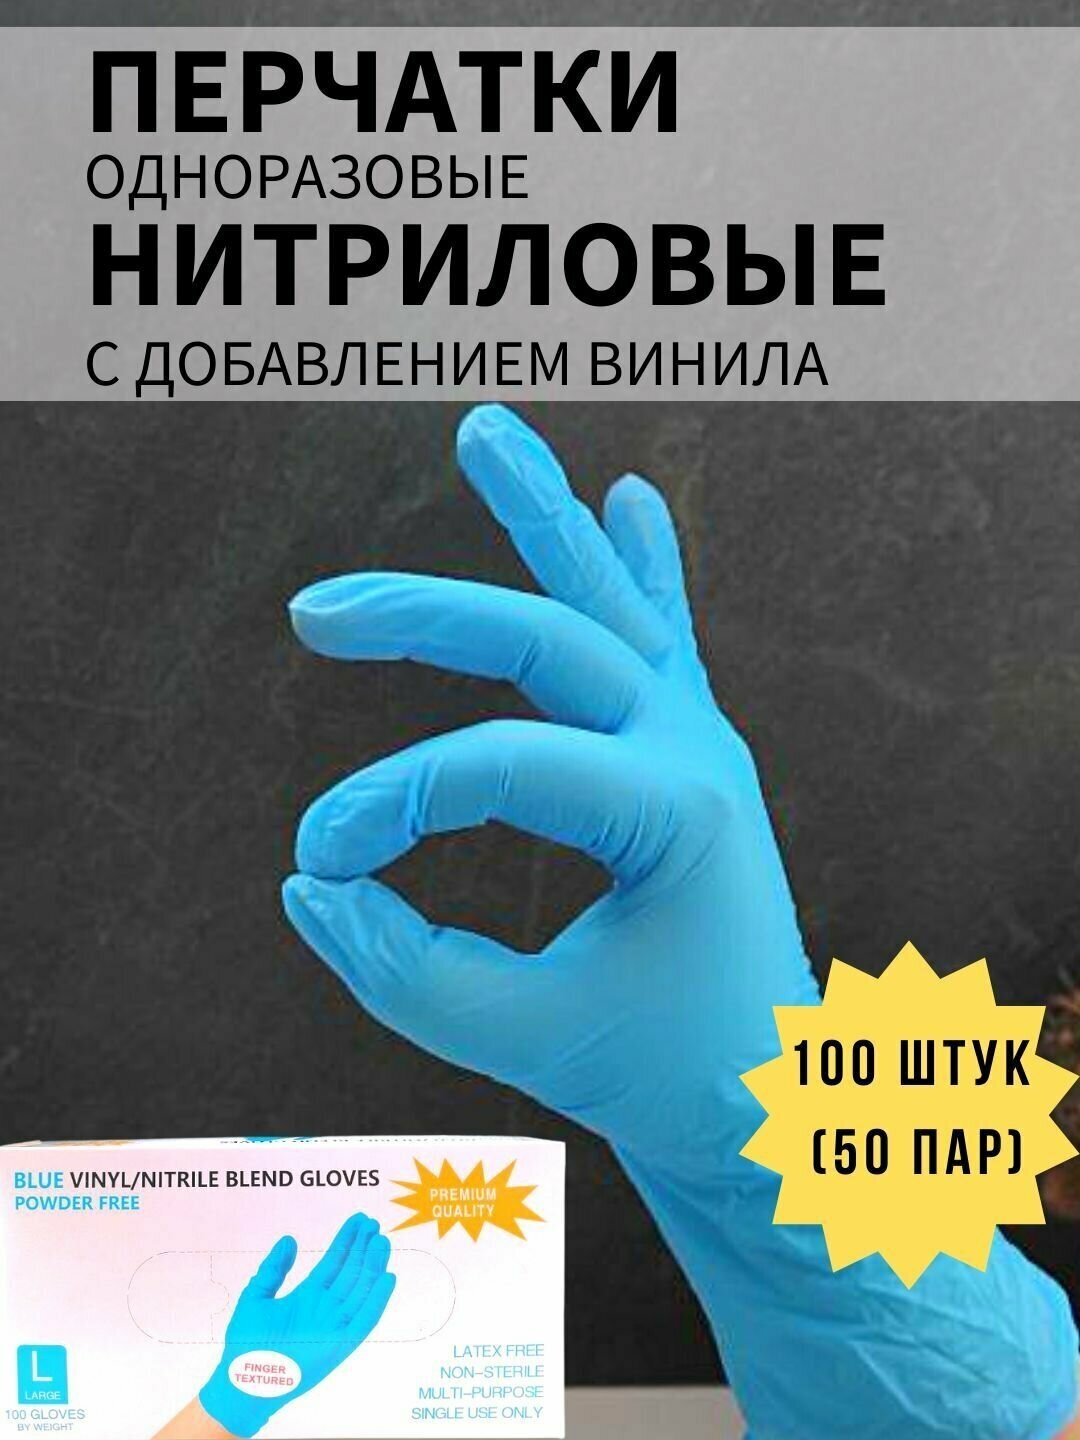 Перчатки одноразовые нитрил-винил голубые 100 шт, размер L - фотография № 1